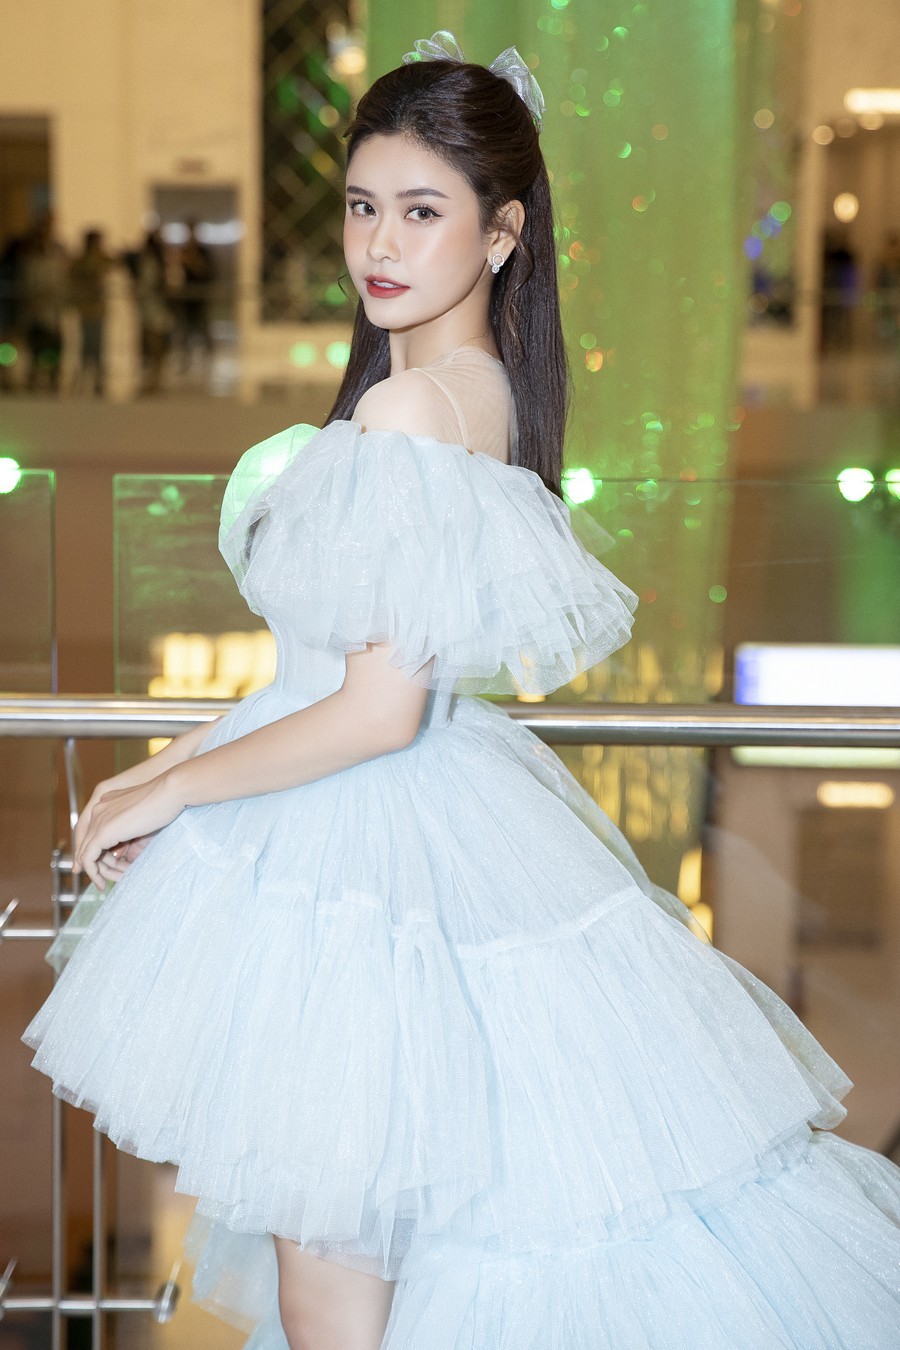  
Trương Quỳnh Anh xinh đẹp hết phần thiên hạ với chiếc váy xếp tầng tông xanh pastel. 